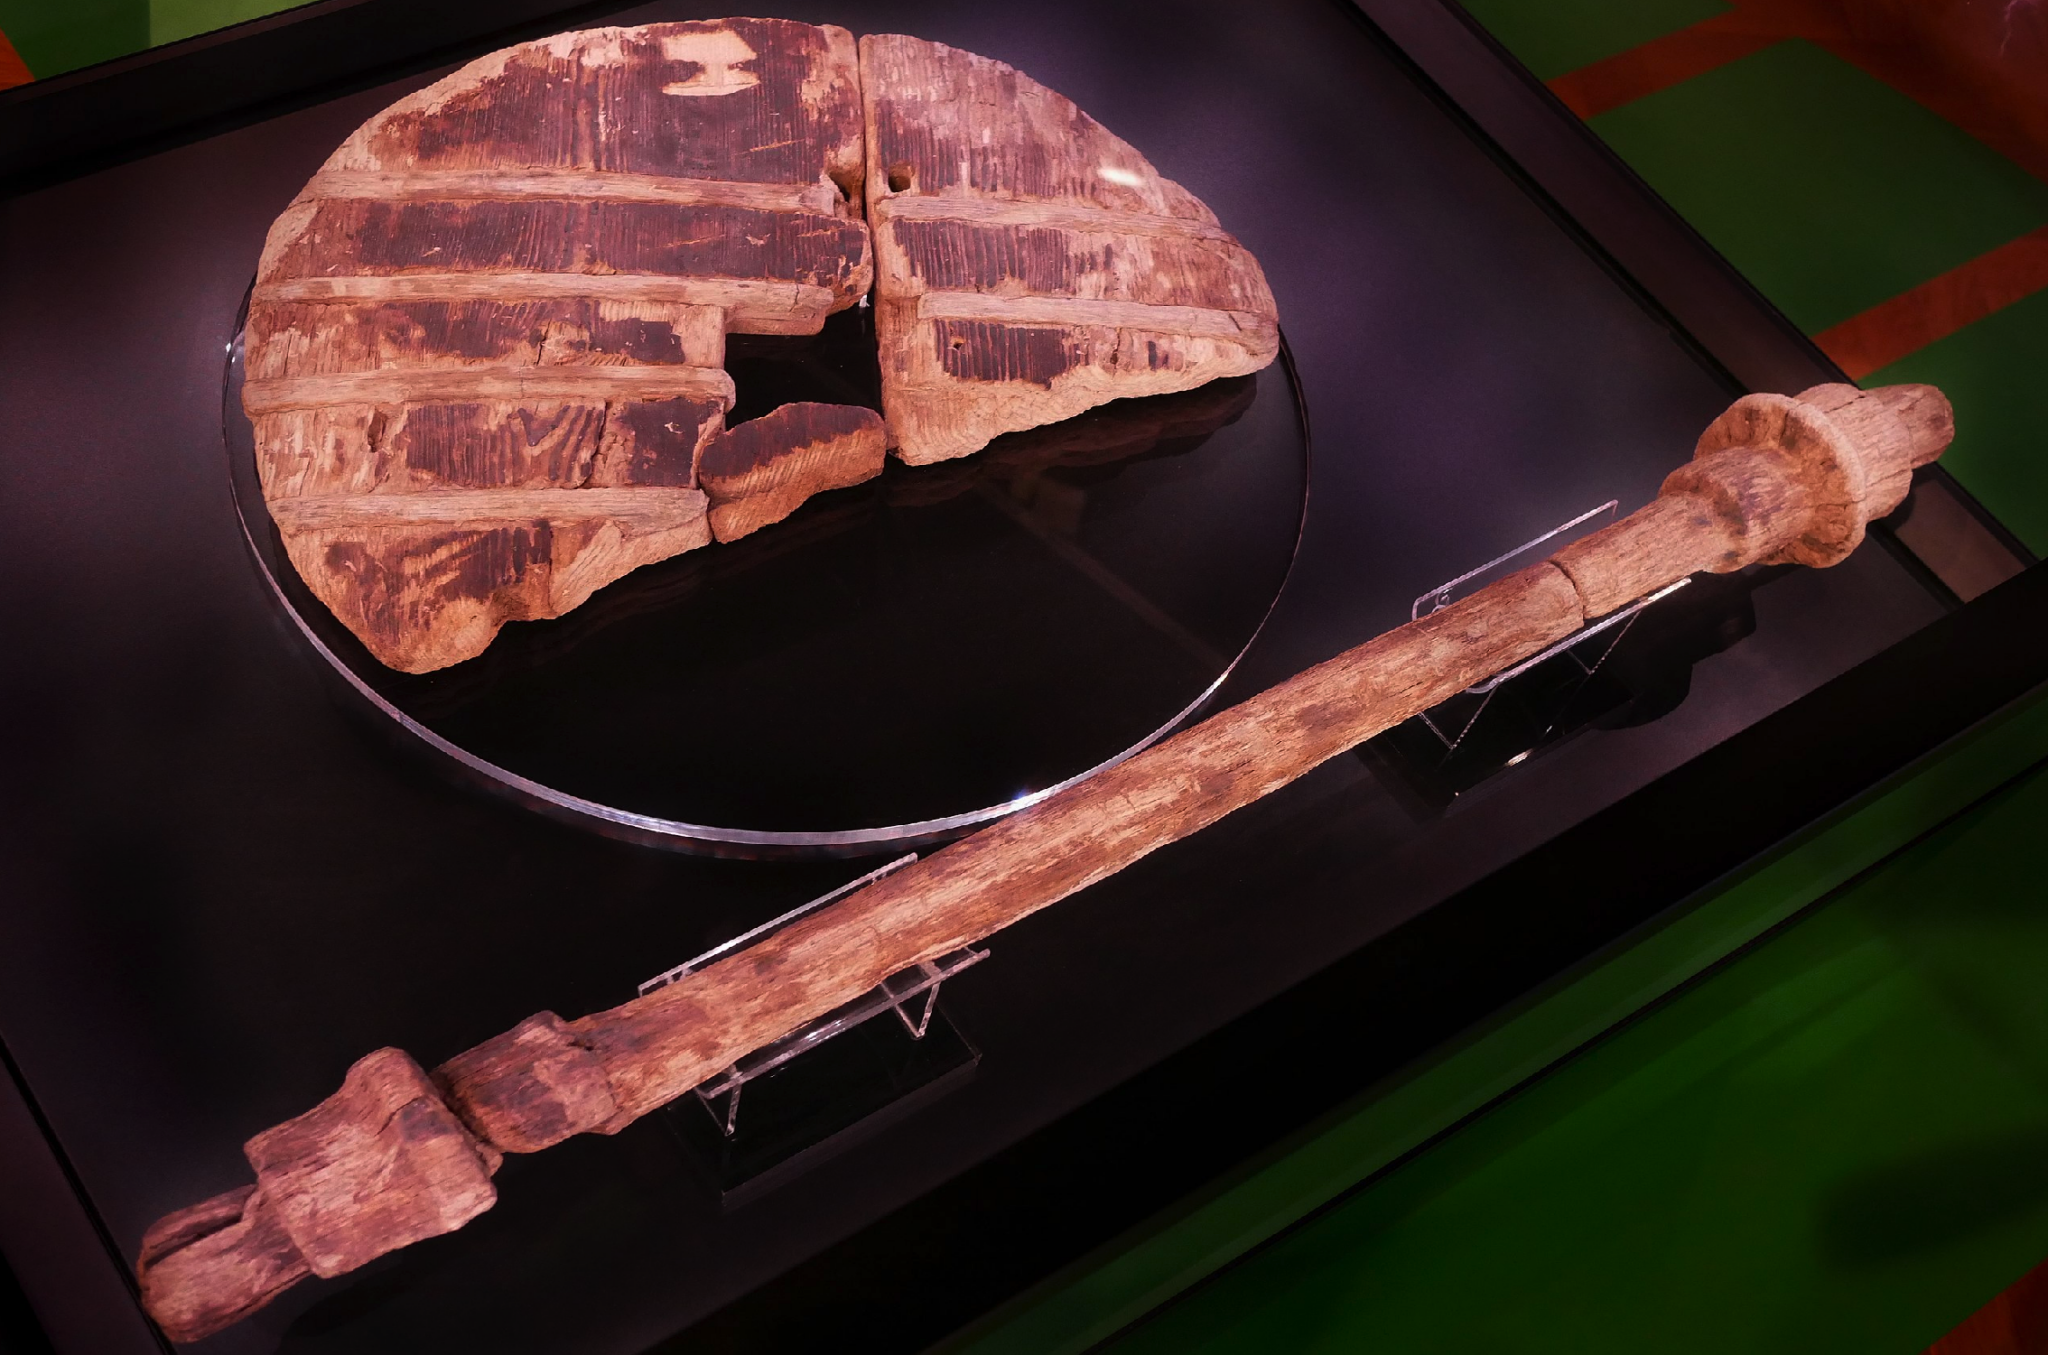 盧布利安車輪（斯洛文尼亞）製造於公元前3200年，是發現的最古老的車輪。它直徑70釐米，，由4根吊片連接在一起